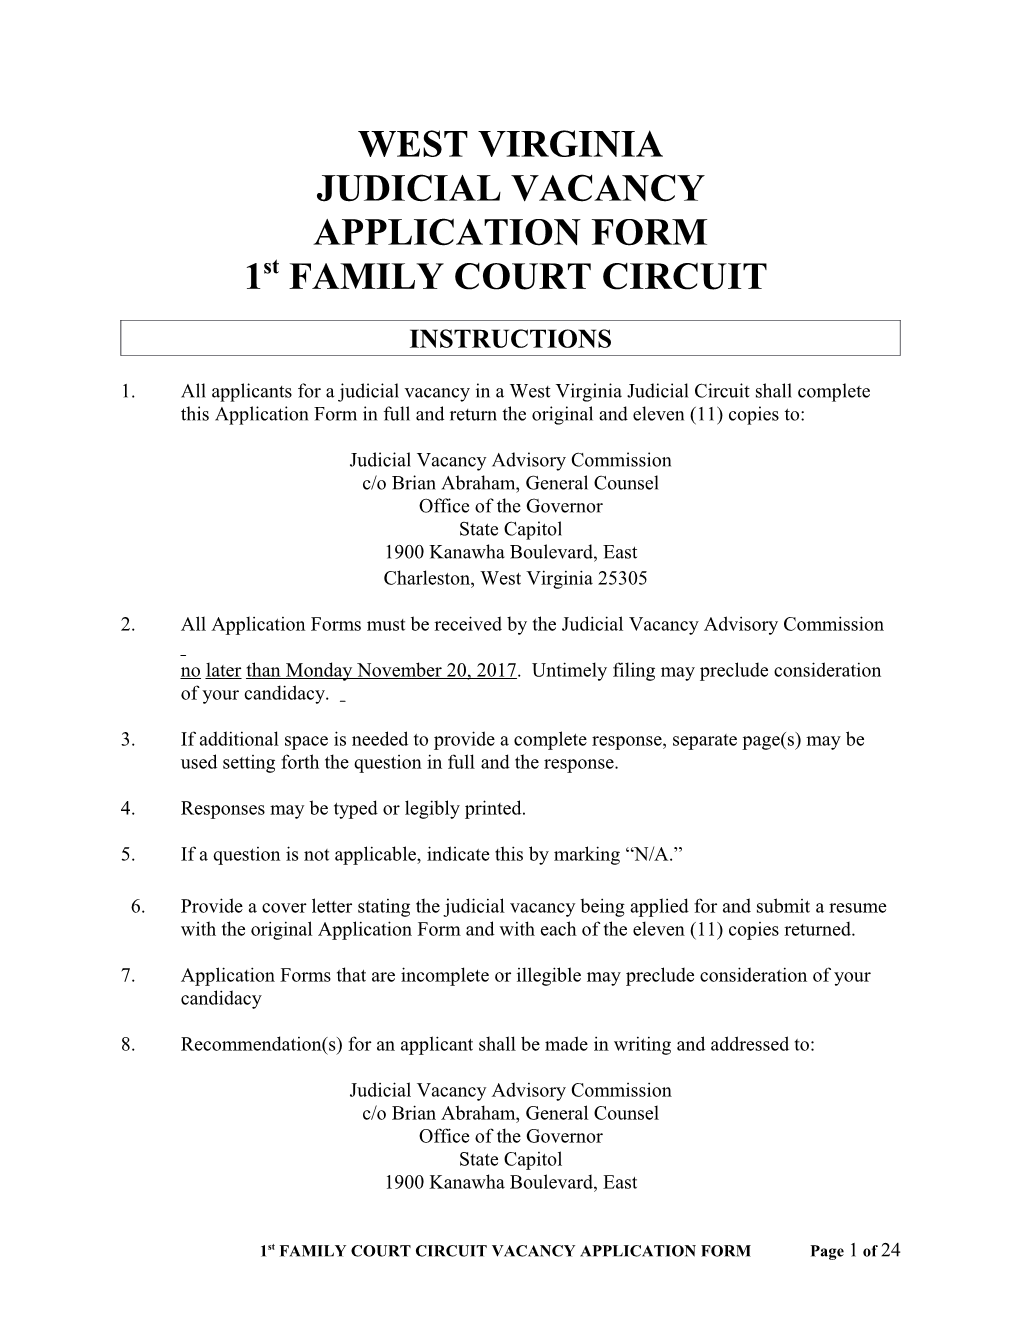 Judicial Vacancy